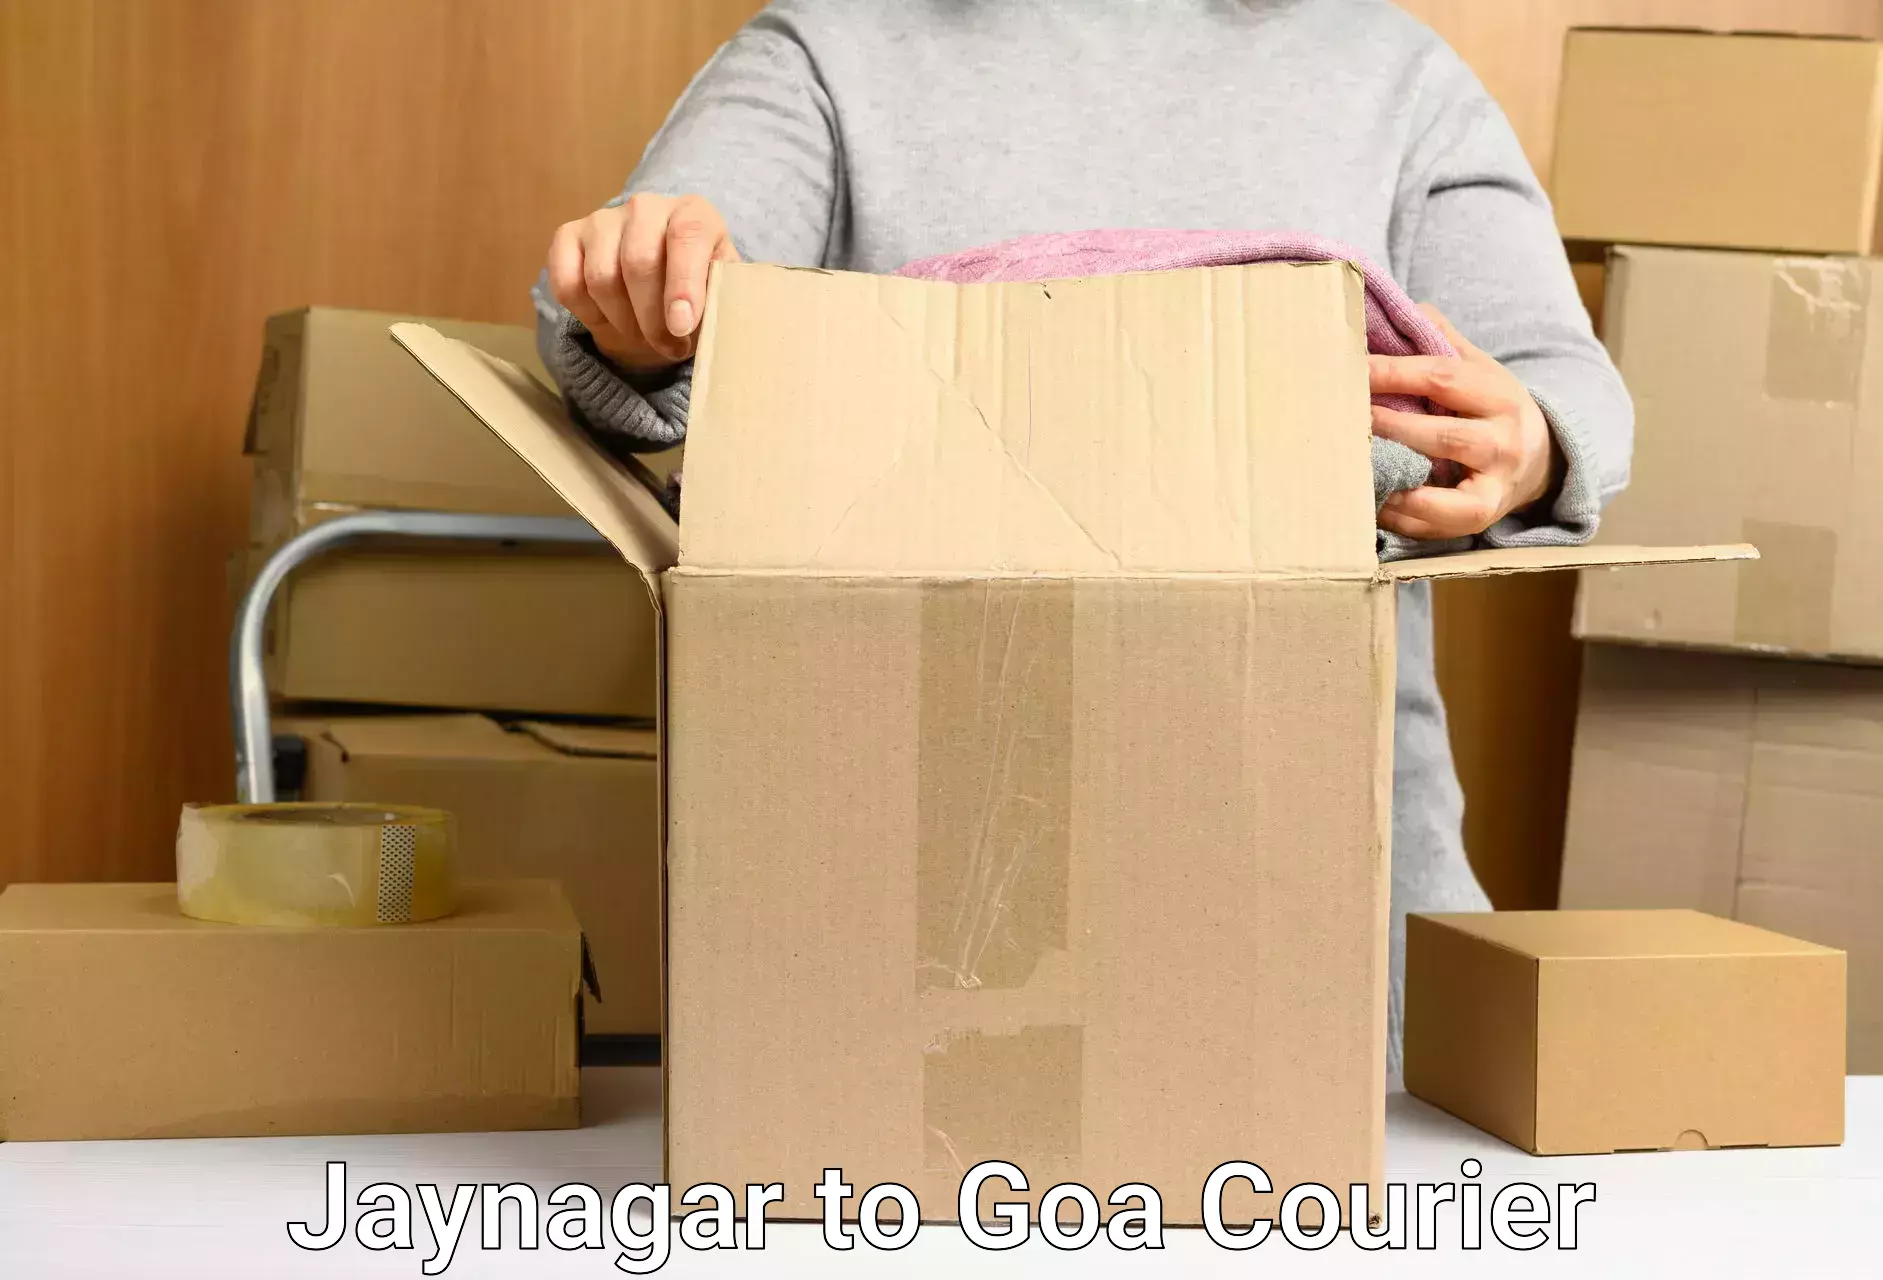 Express package handling Jaynagar to Goa